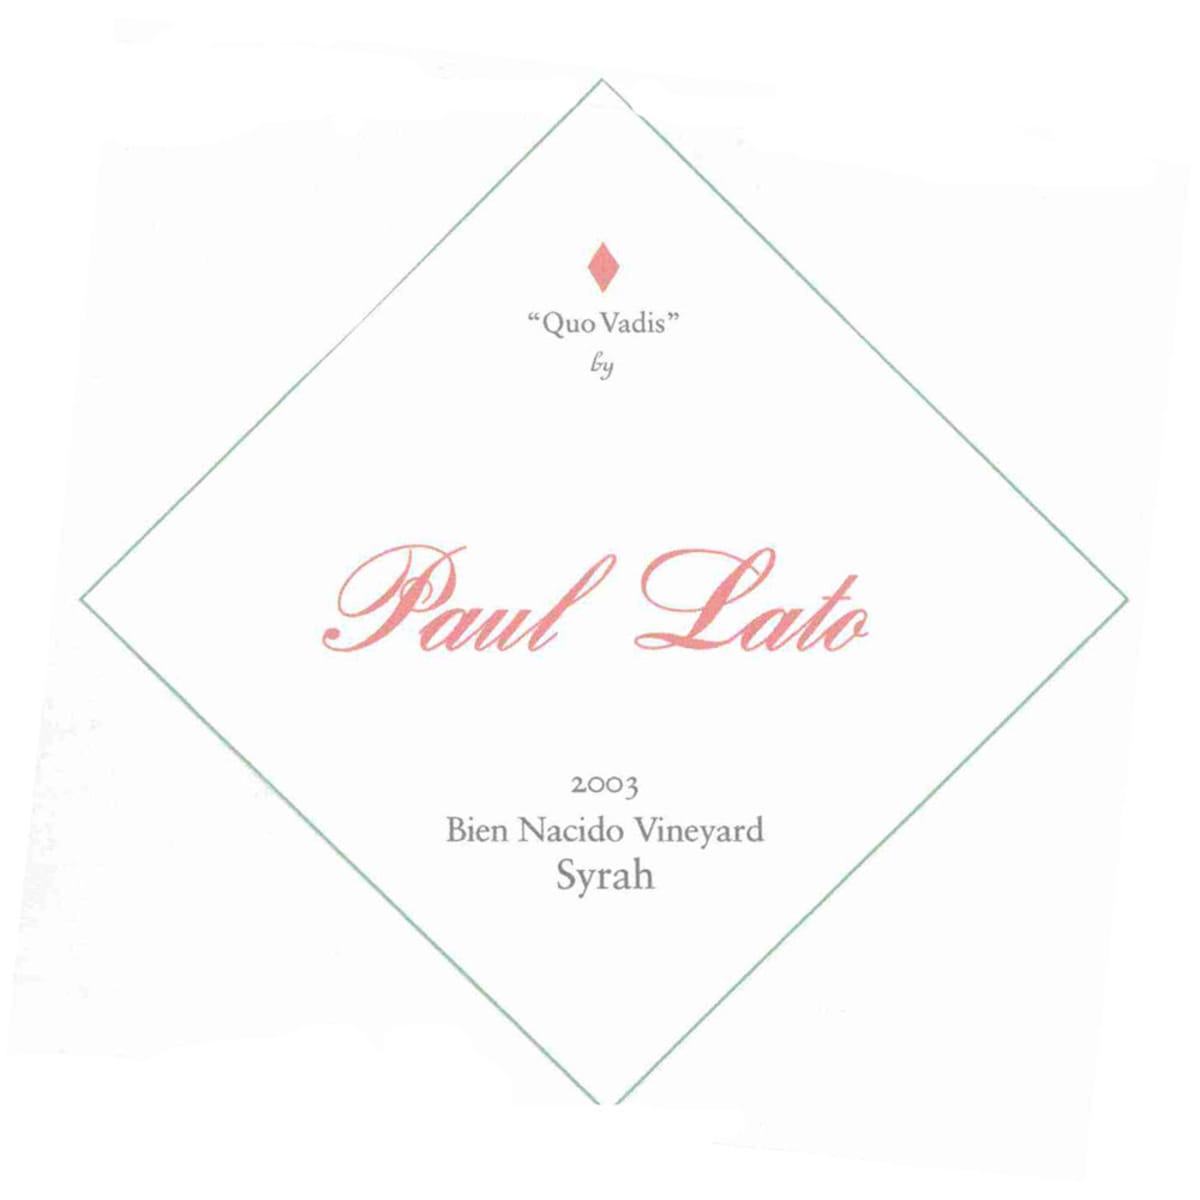 Paul Lato Quo Vadis Bien Nacido Vineyard Syrah 2003 Front Label